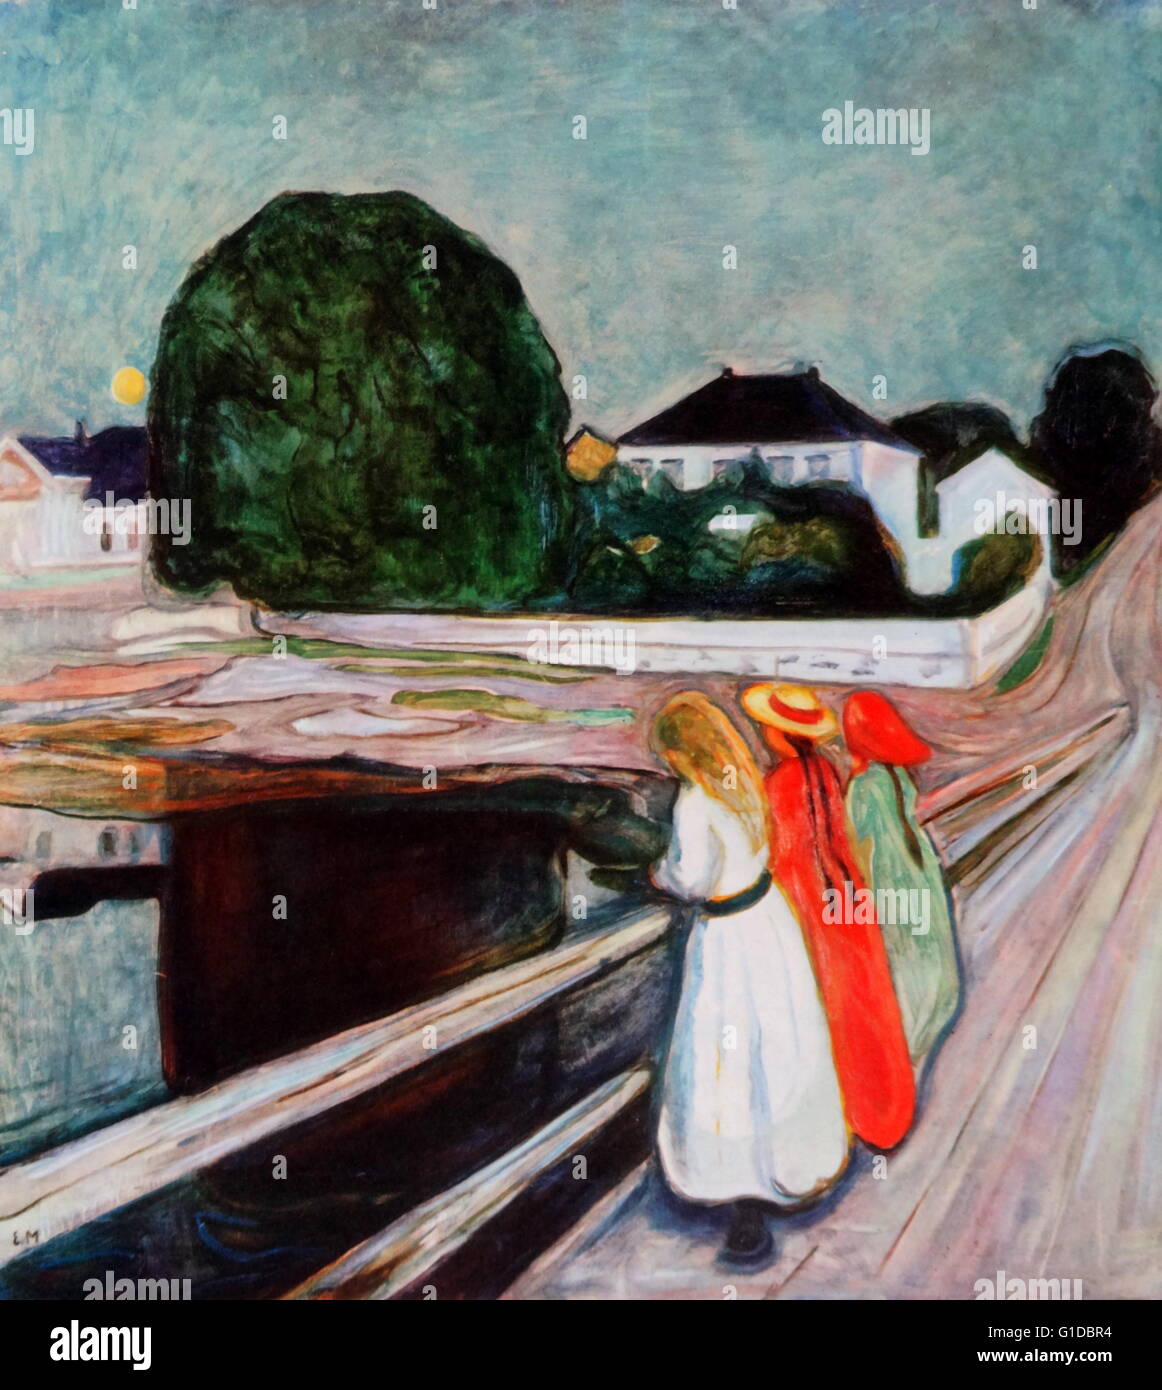 Mädchen auf der Brücke, 1899 von Edvard Munch (1863-1944). Norwegischer Maler und Grafiker, dessen Behandlung von psychologischen Themen auf Symbolik des 19. Jahrhunderts gebaut und deutschen Expressionismus des frühen 20. Jahrhunderts beeinflusst. Stockfoto